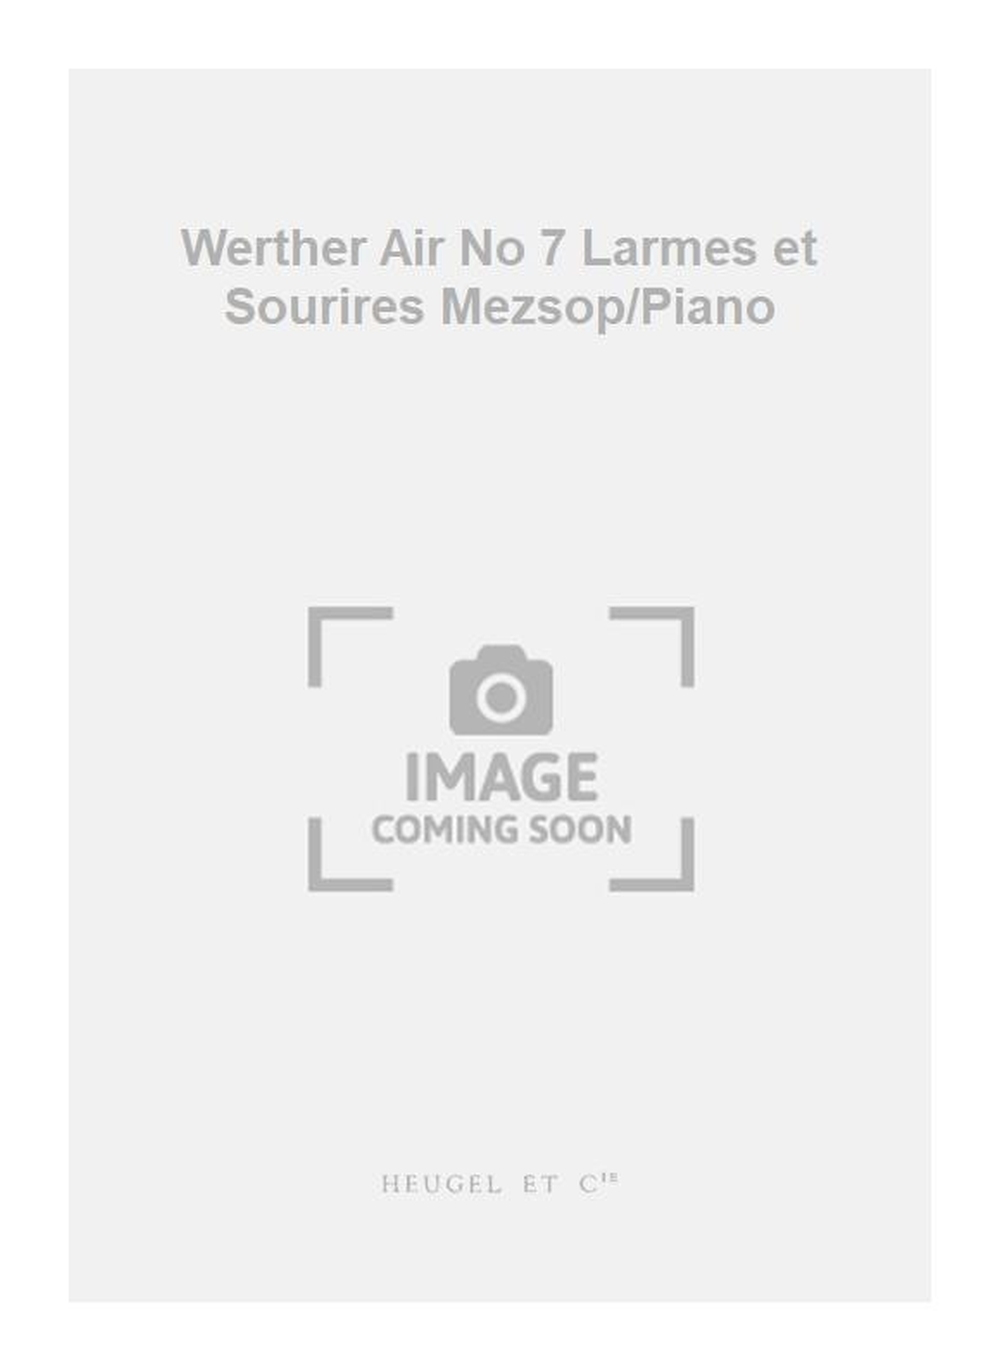 Jules Massenet: Werther Air No 7 Larmes et Sourires Mezsop/Piano